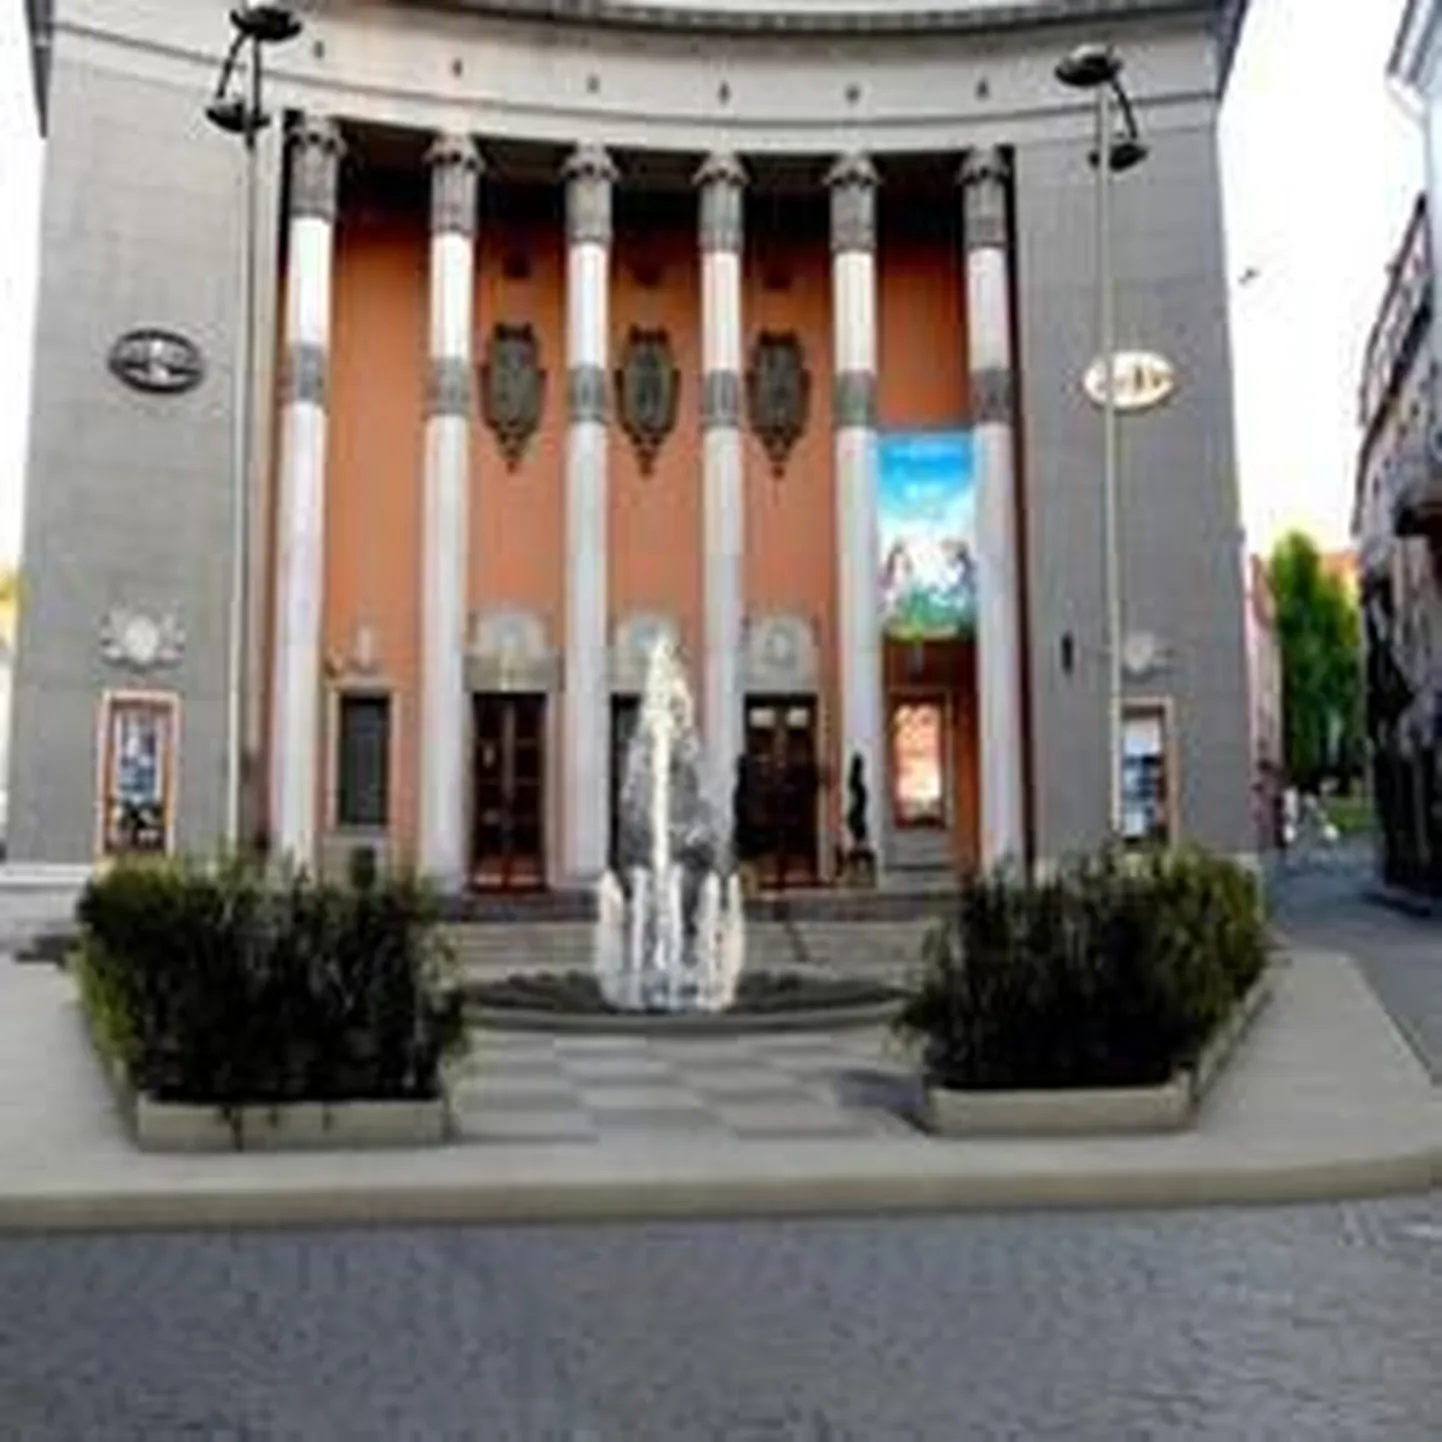 Проект фонтана перед кинотеатром "Сыпрус".